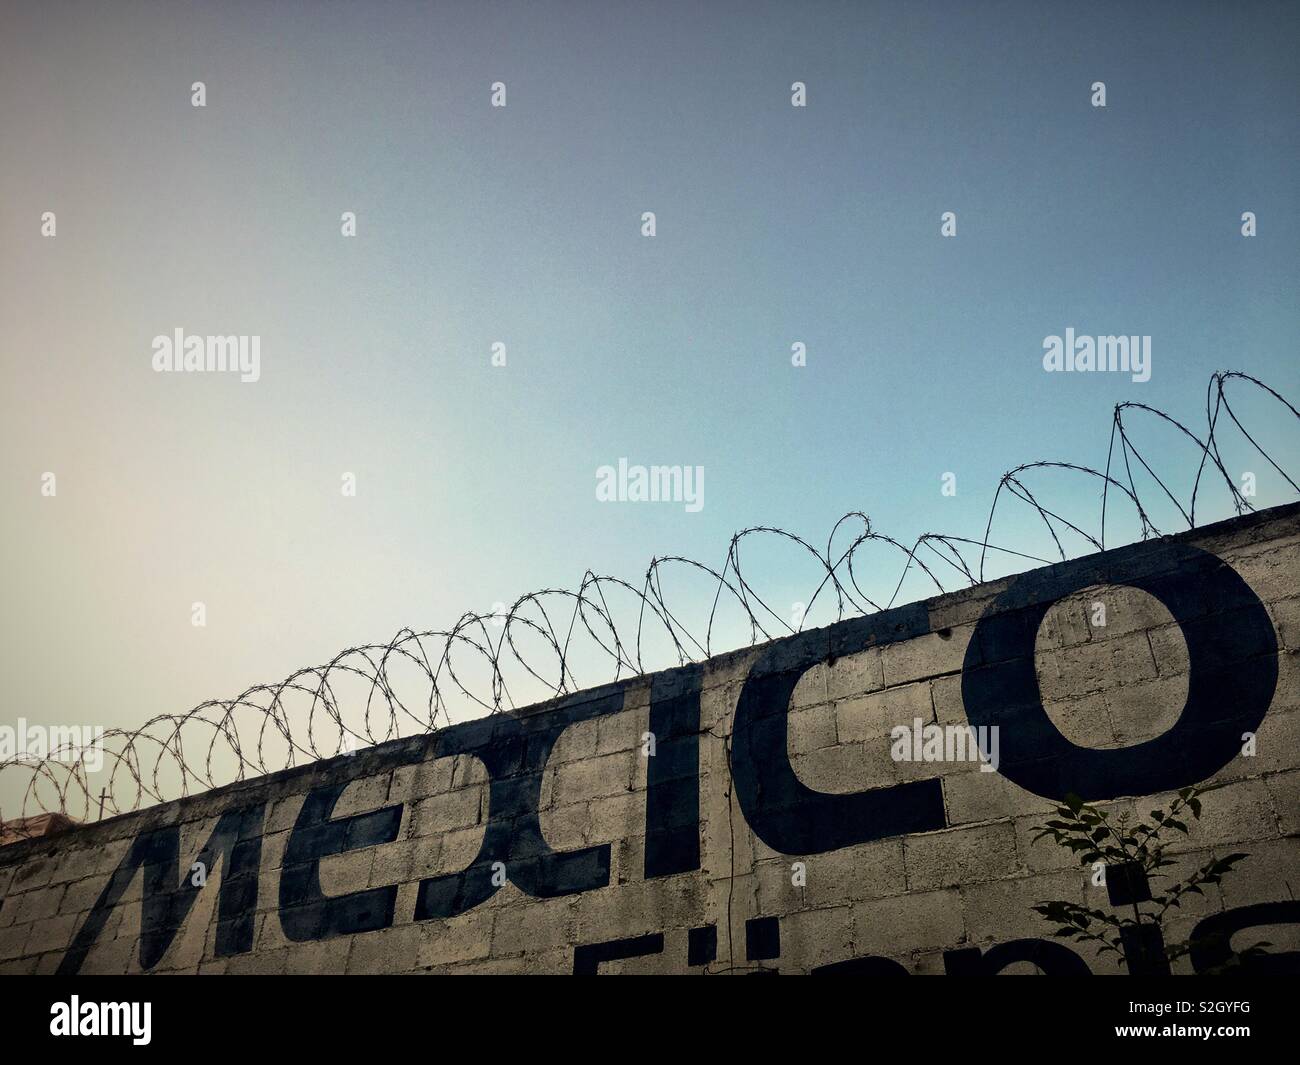 Photo de rue, mur commun avec Barb Wire et un Mexique peint sur parole. Pris avant le coucher du soleil, pas de nuages, mais un ciel couleur de la pollution. Banque D'Images